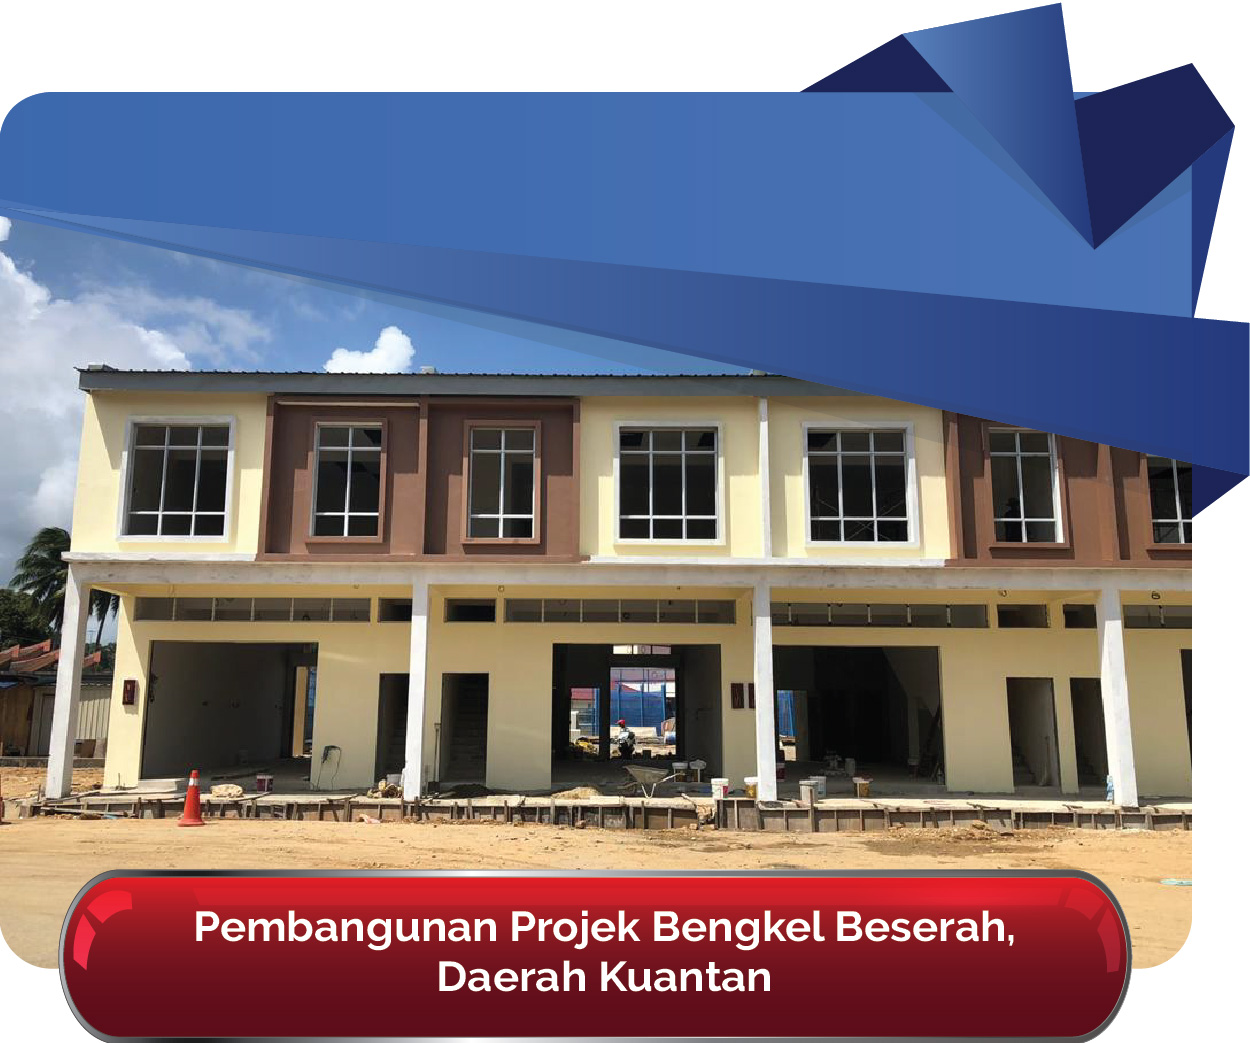 newPembangunan Projek Bengkel Beserah Daerah Kuantan 01 01